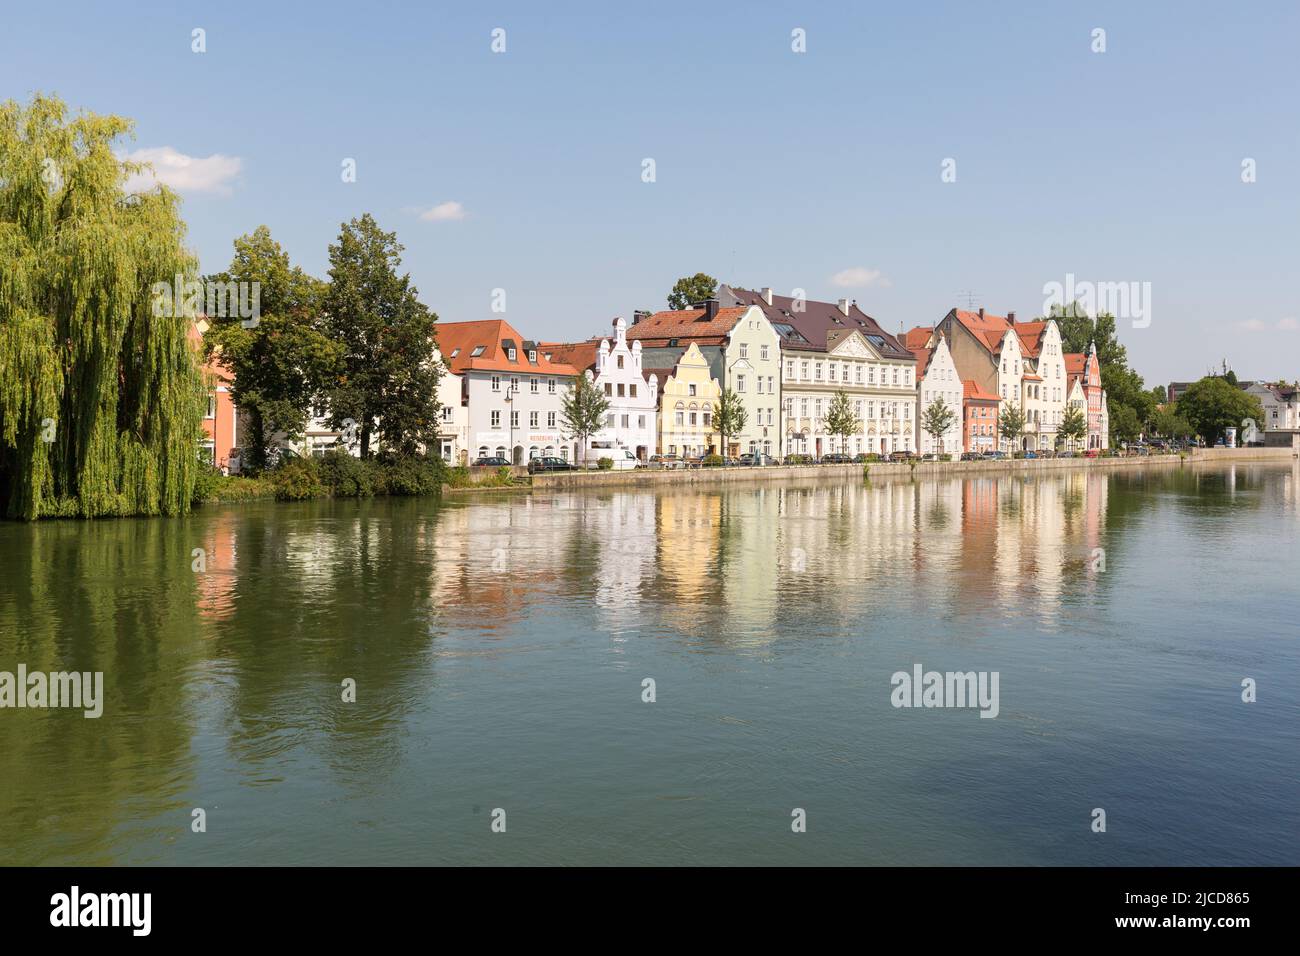 Landshut, Alemania - 15 de agosto de 2021: Casas históricas con fachadas de colores en las orillas del río Isar. Foto de stock